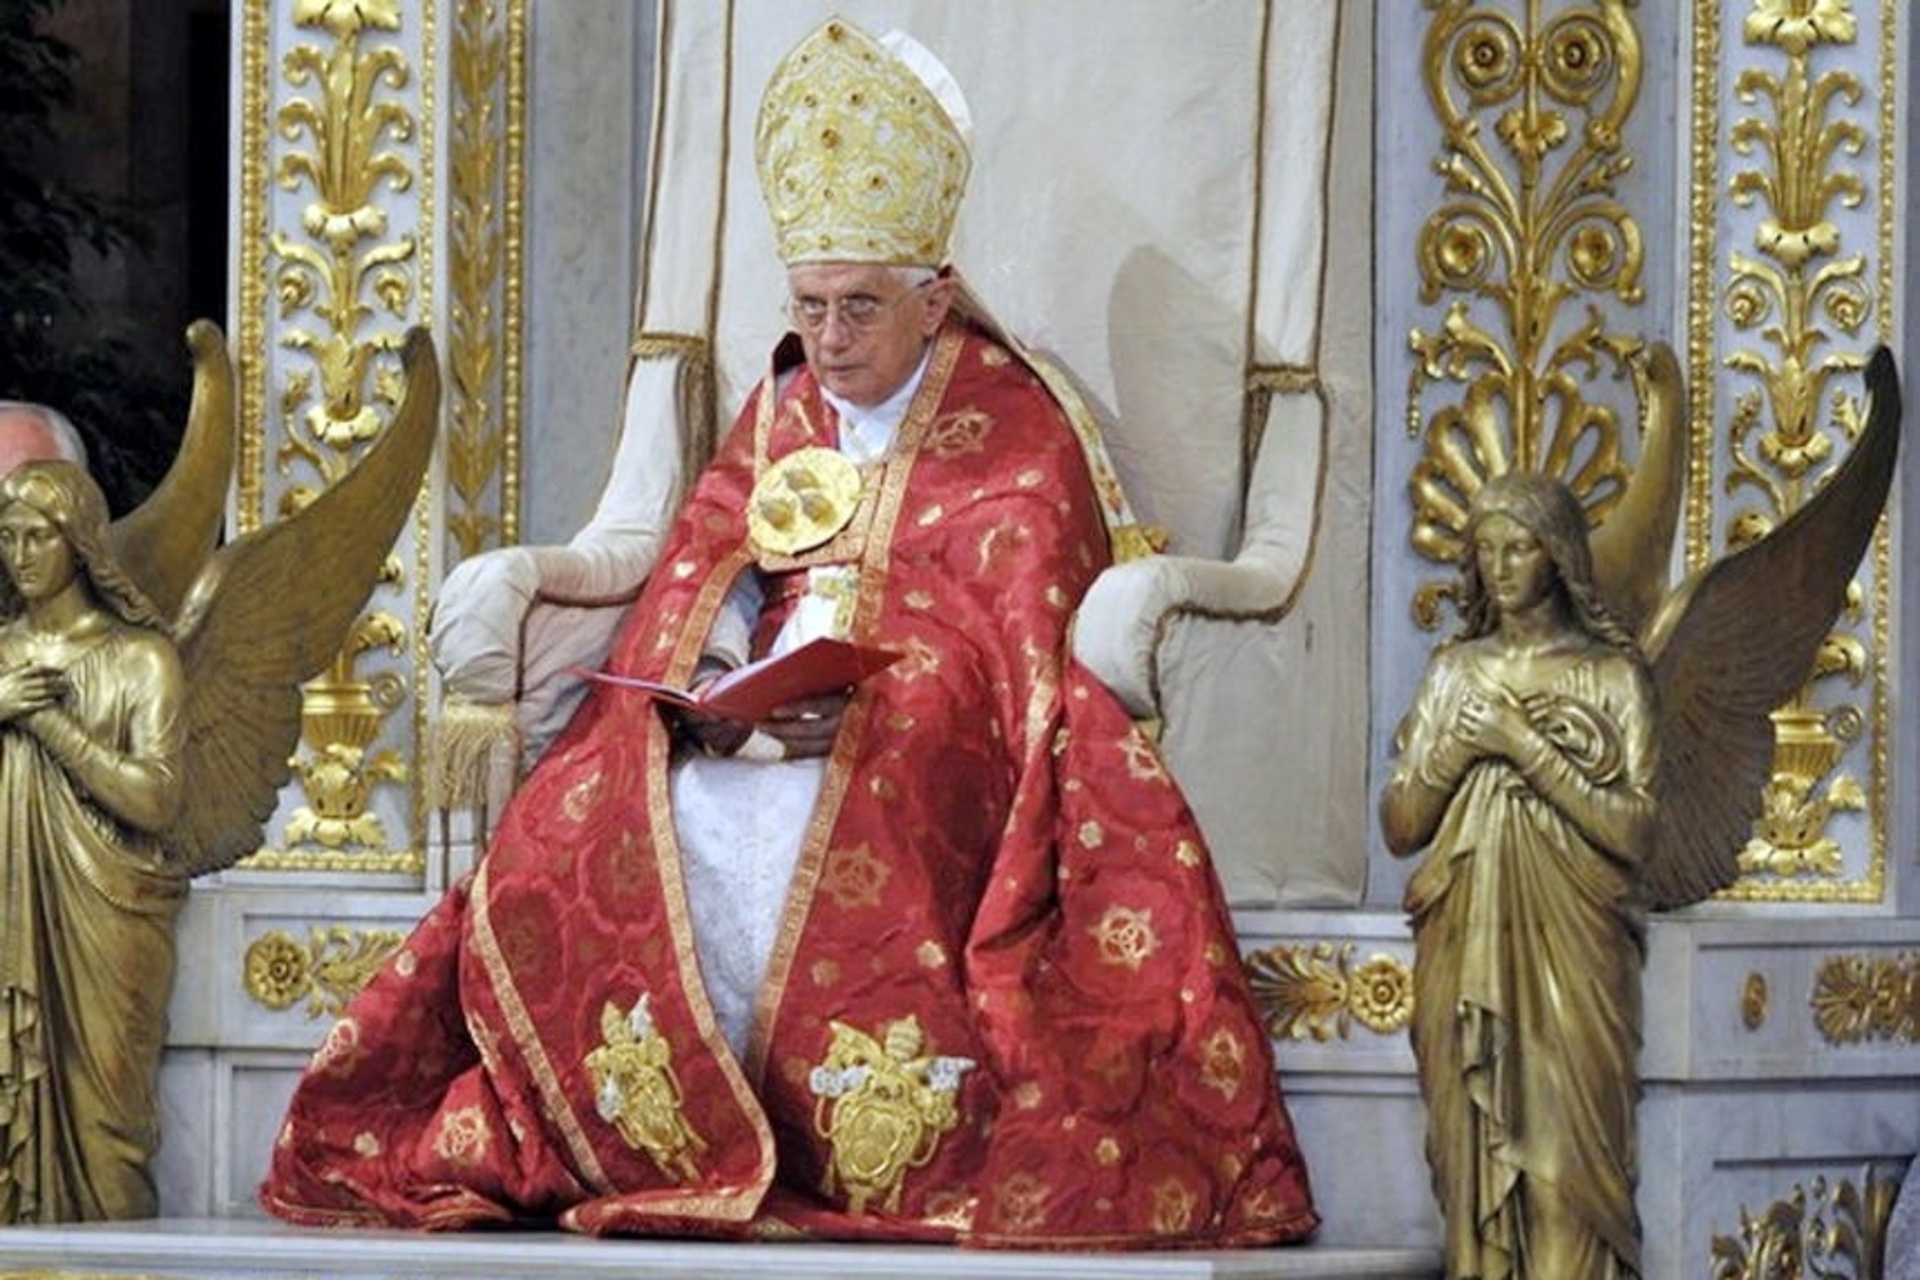 Påve Benedikt XVI: Benedikt XVI, född Joseph Ratzinger, den katolska kyrkans 265:e påve och biskop av Rom, presiderade över öppningsceremonin för det Paulina året den 29 juni 2008